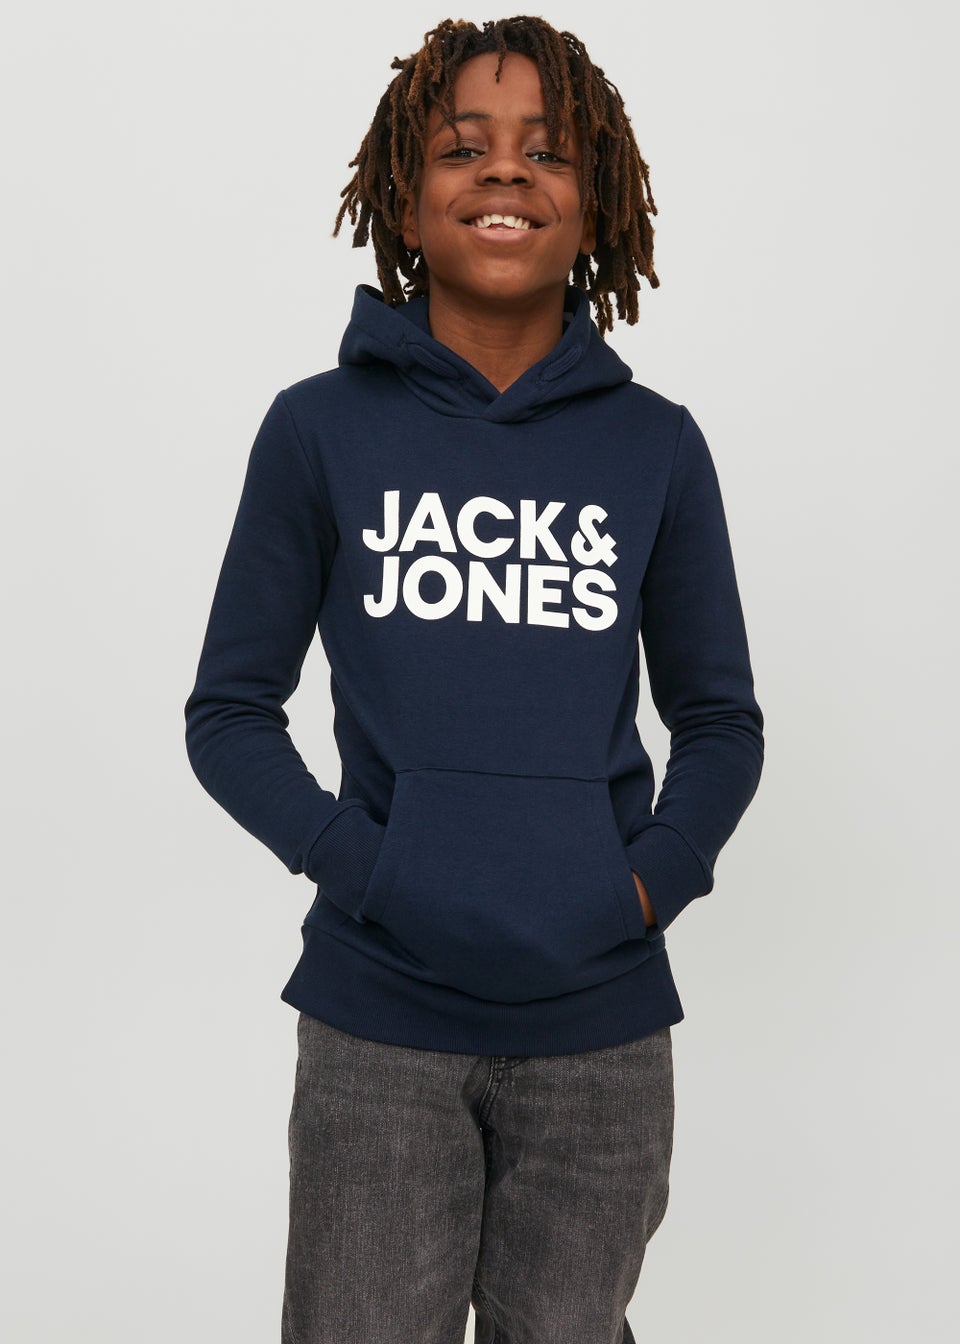 Jack & Jones Junior Navy Logo Hoodie (6-16yrs)